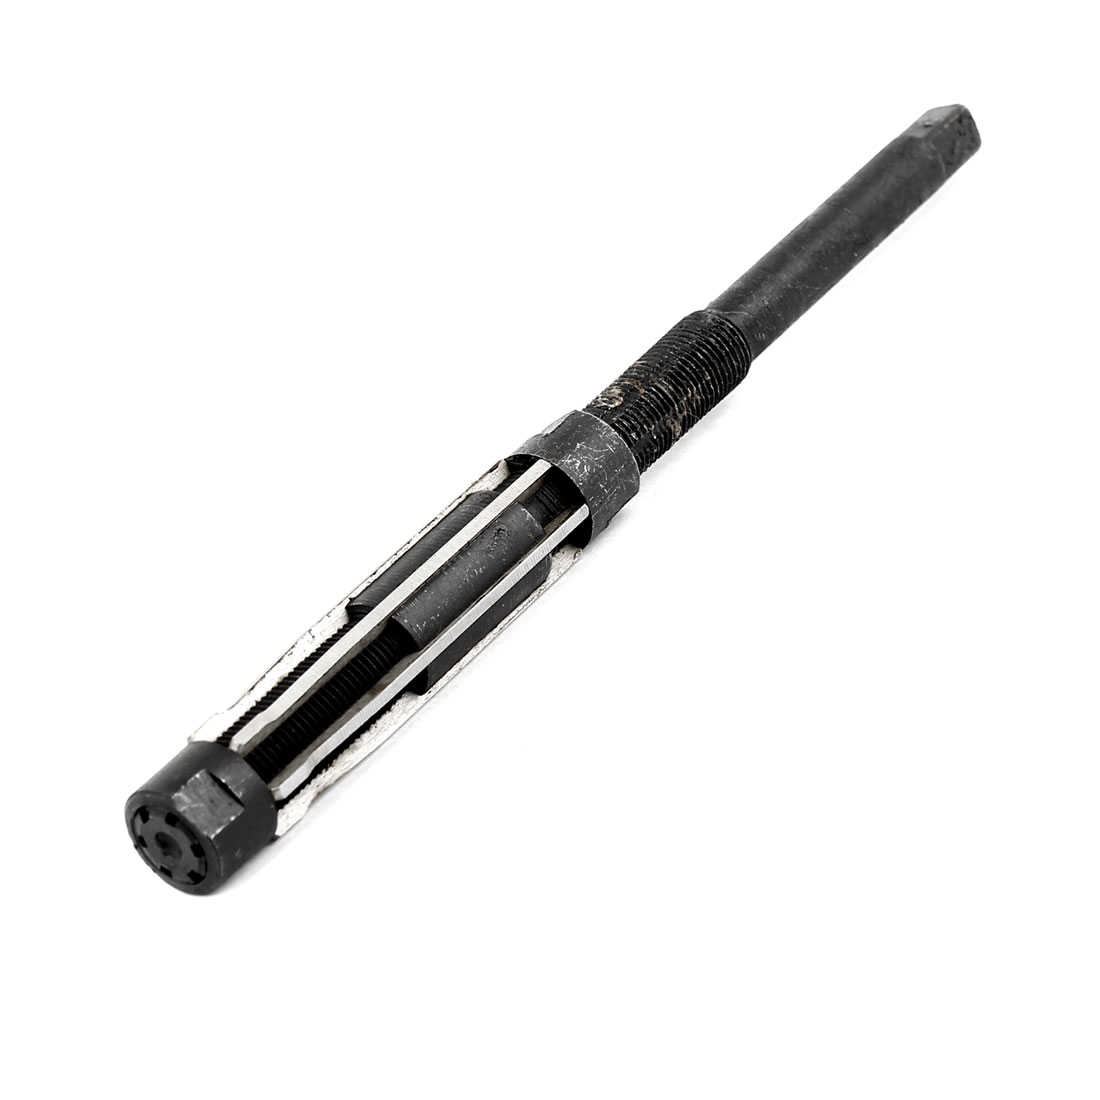 Unique Bargains Black HSS Size Range 3/5'- 43/64' 162mm Long Adjustable Hand Reamer